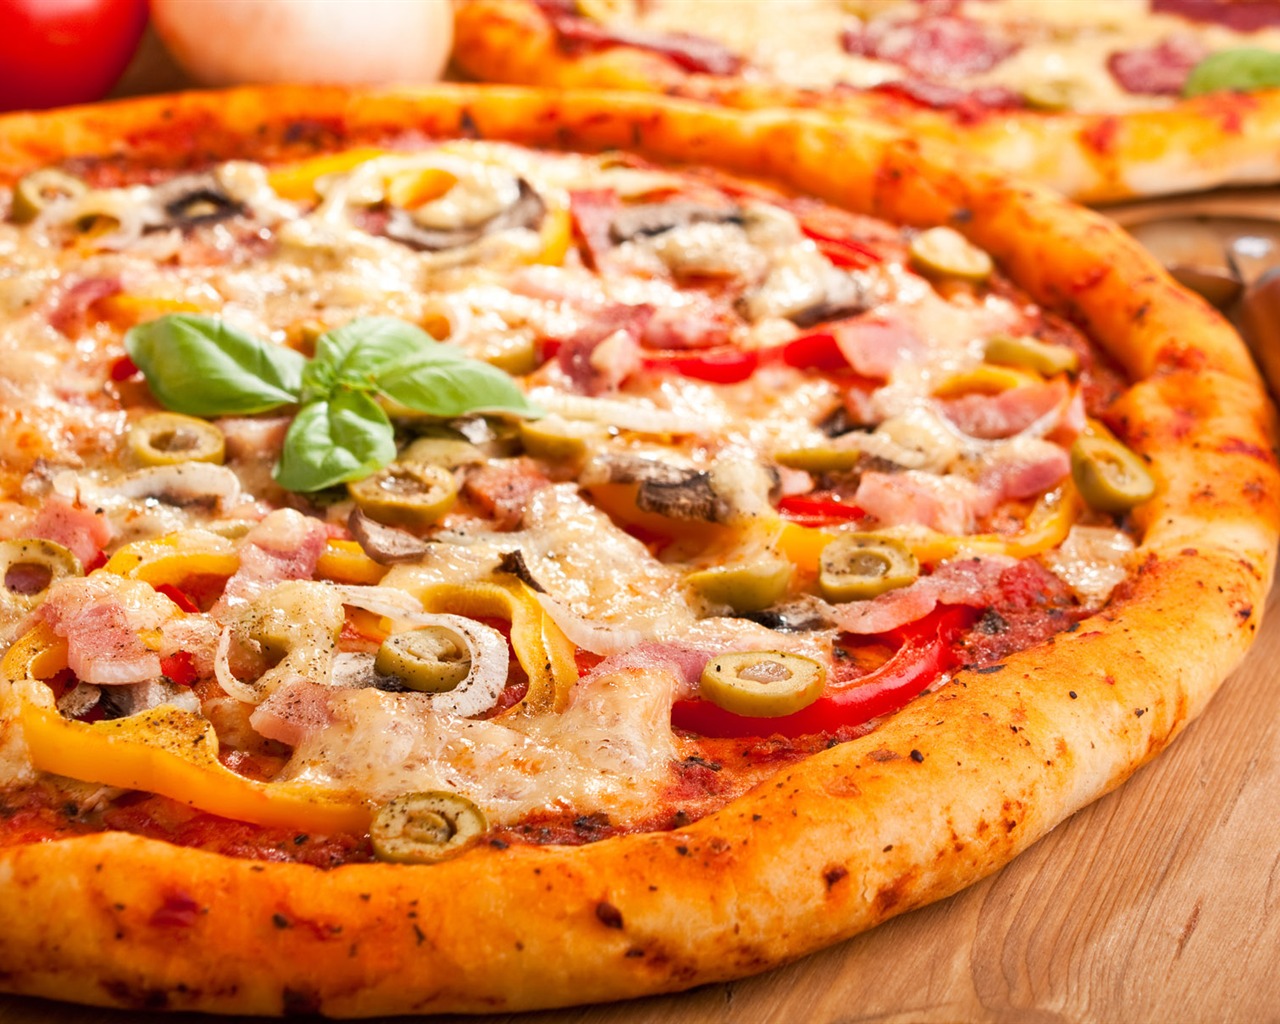 Fondos de pizzerías de Alimentos (4) #20 - 1280x1024